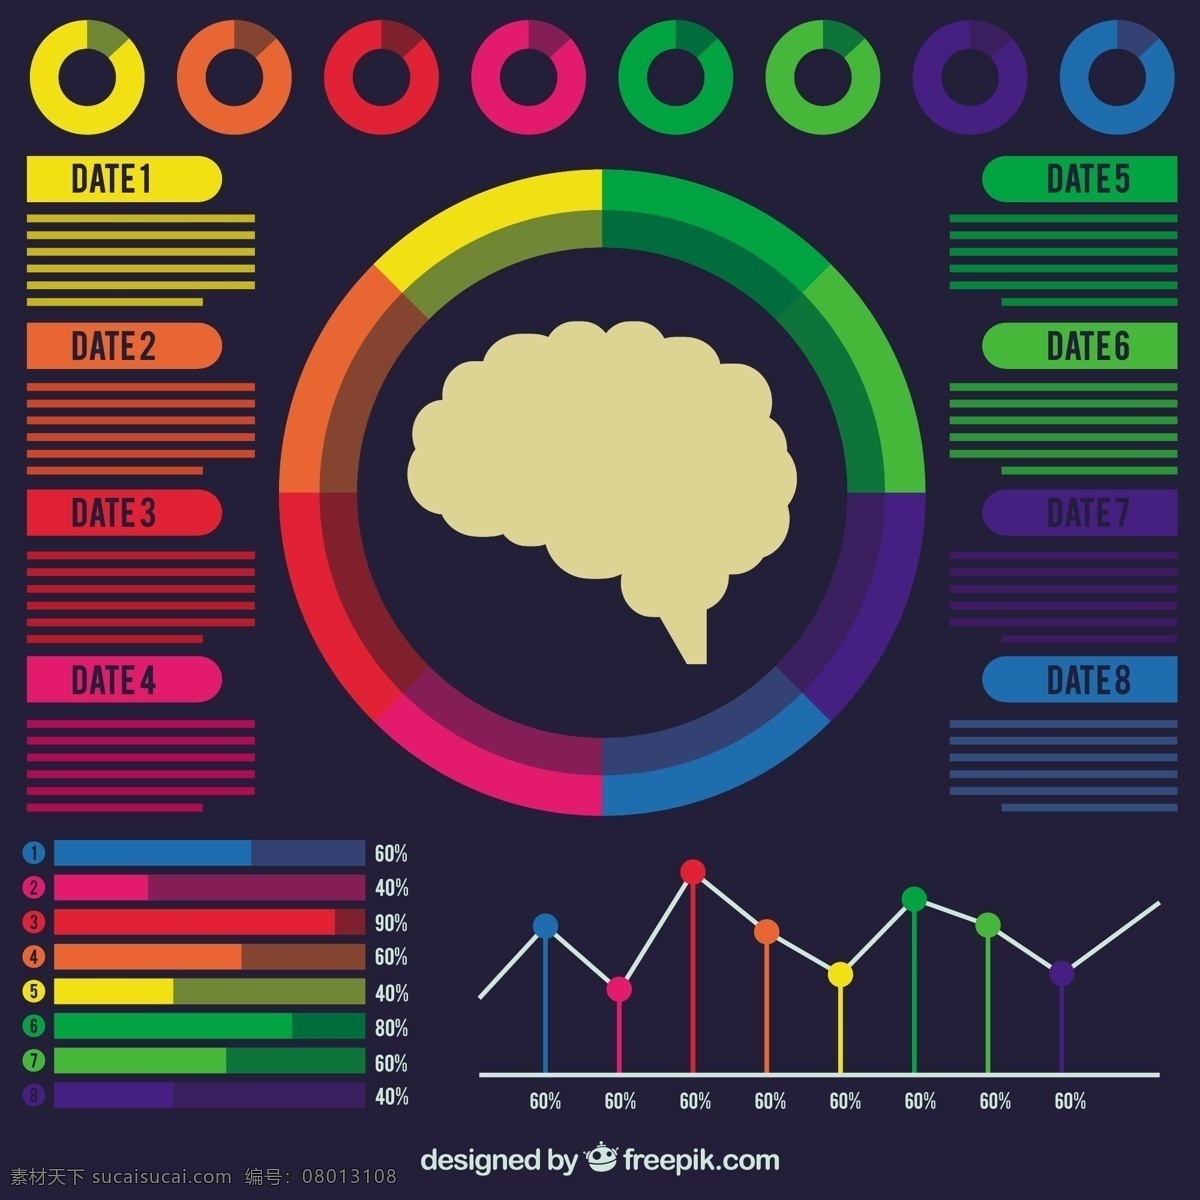 丰富多彩 人类 大脑 信息 图表 图形 业务 模板 脑 科学 丰富多彩的 人的 平坦的 创造性 过程 中 信息图表模板 数据 平面设计 商业图表